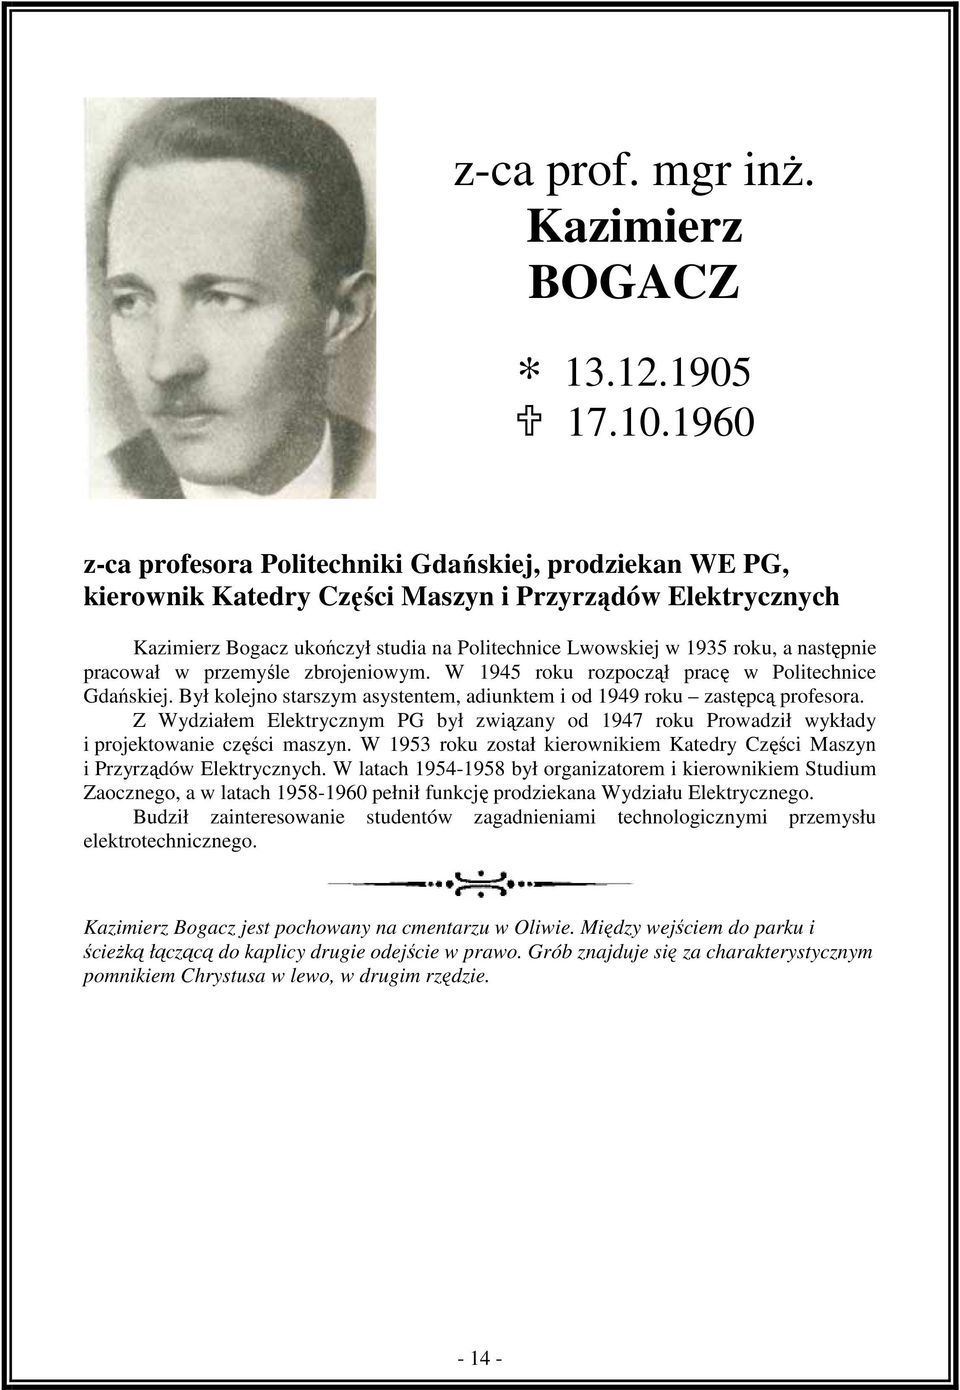 następnie pracował w przemyśle zbrojeniowym. W 1945 roku rozpoczął pracę w Politechnice Gdańskiej. Był kolejno starszym asystentem, adiunktem i od 1949 roku zastępcą profesora.